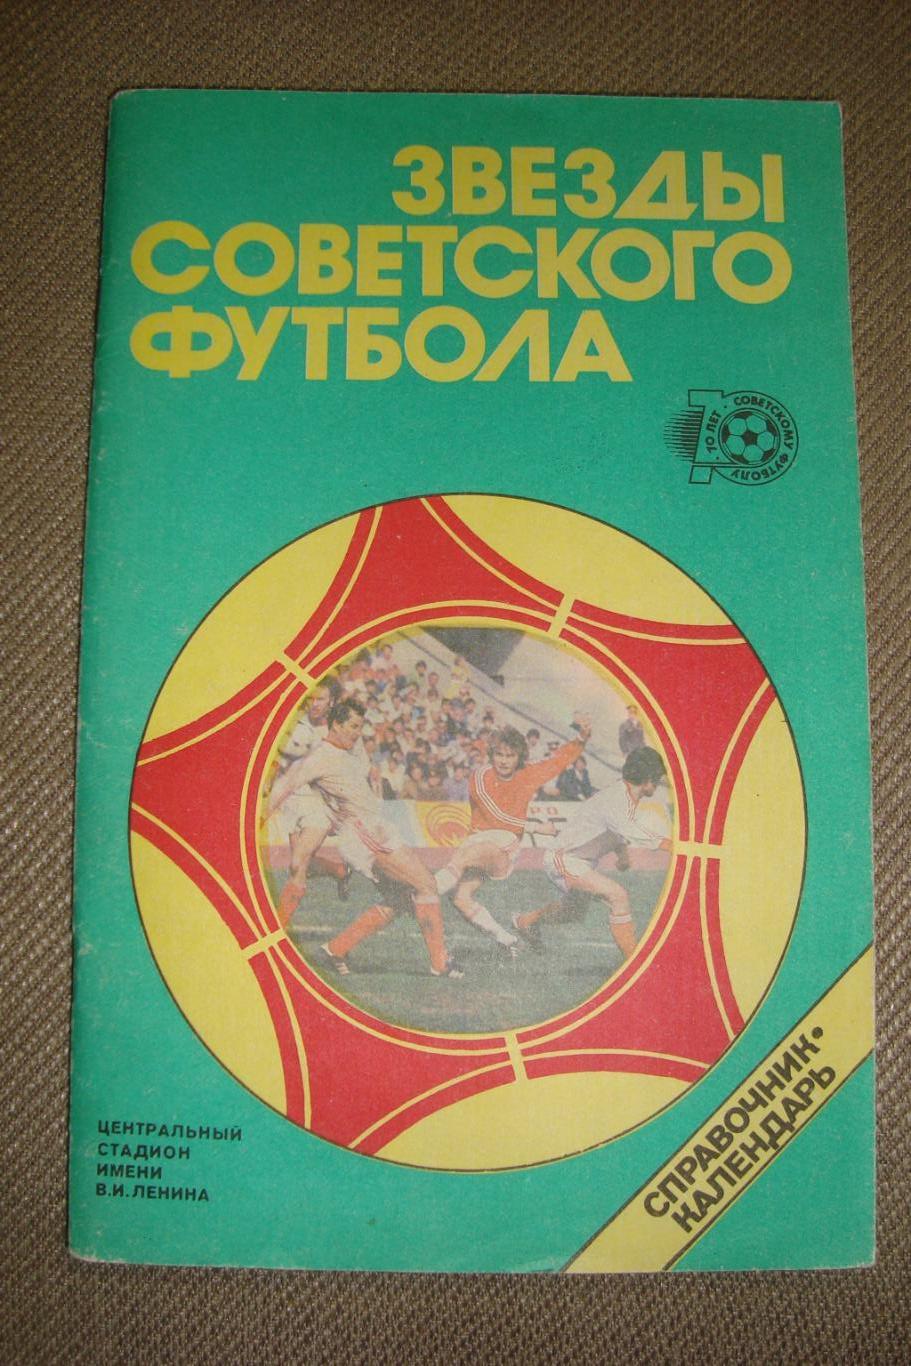 Справочник - календарь Звезды советского футбола 1918 - 1987